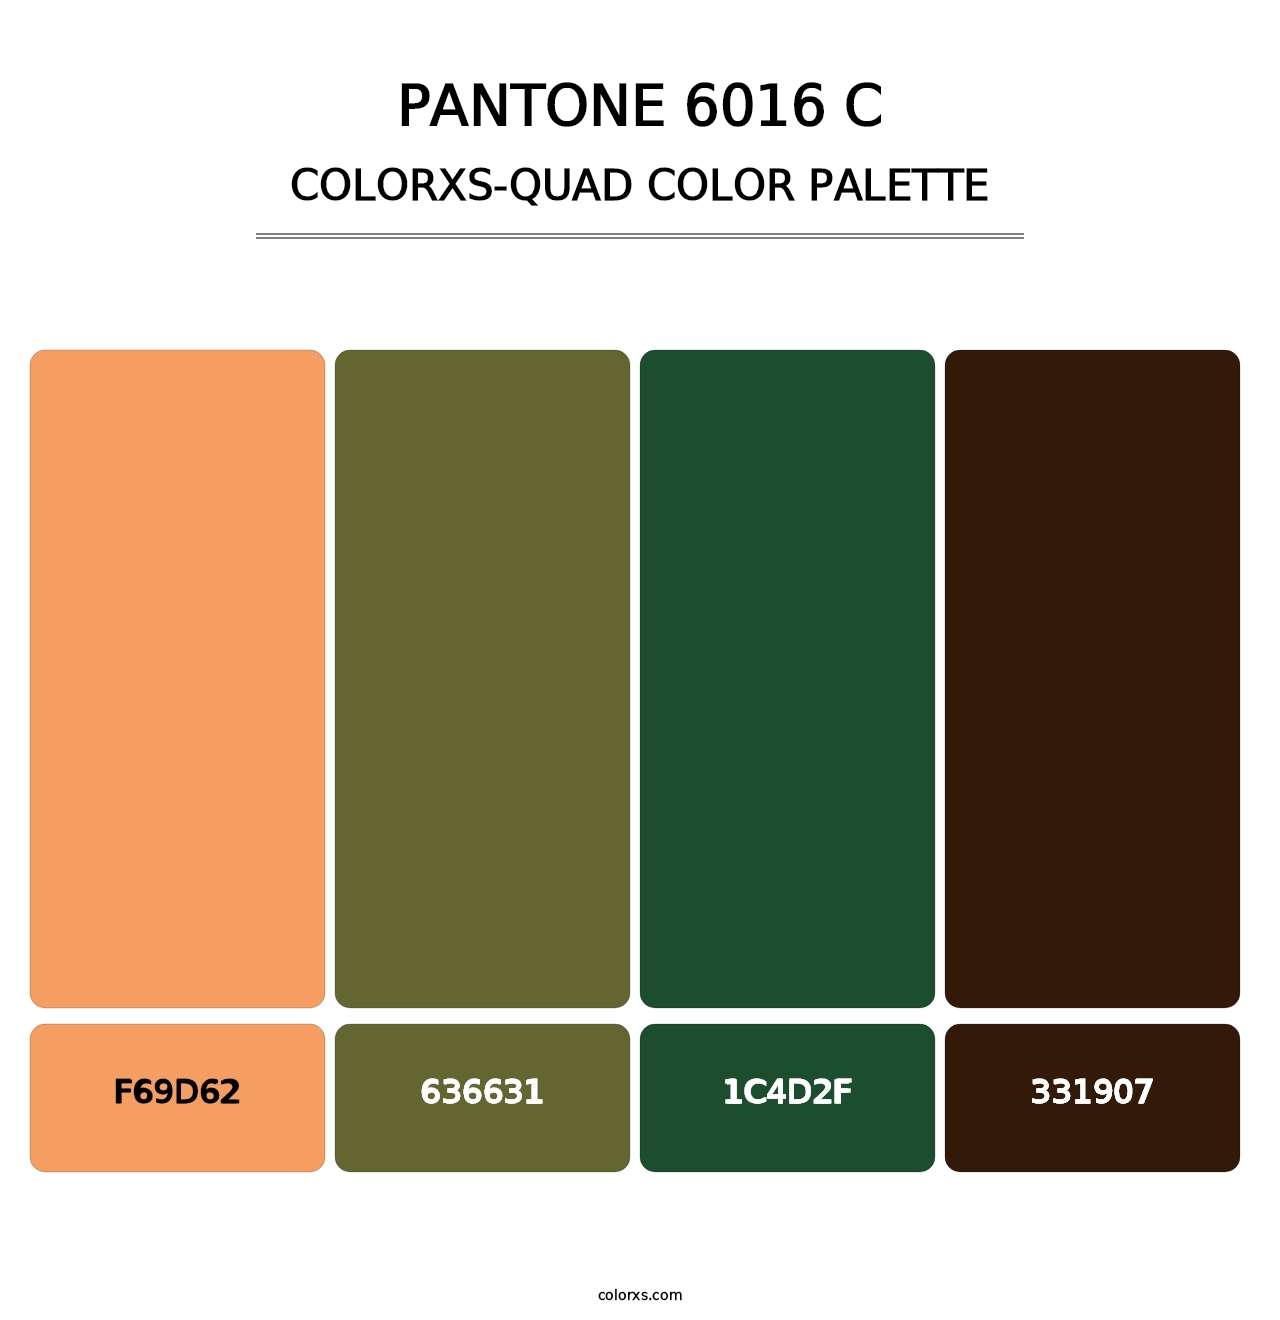 PANTONE 6016 C - Colorxs Quad Palette